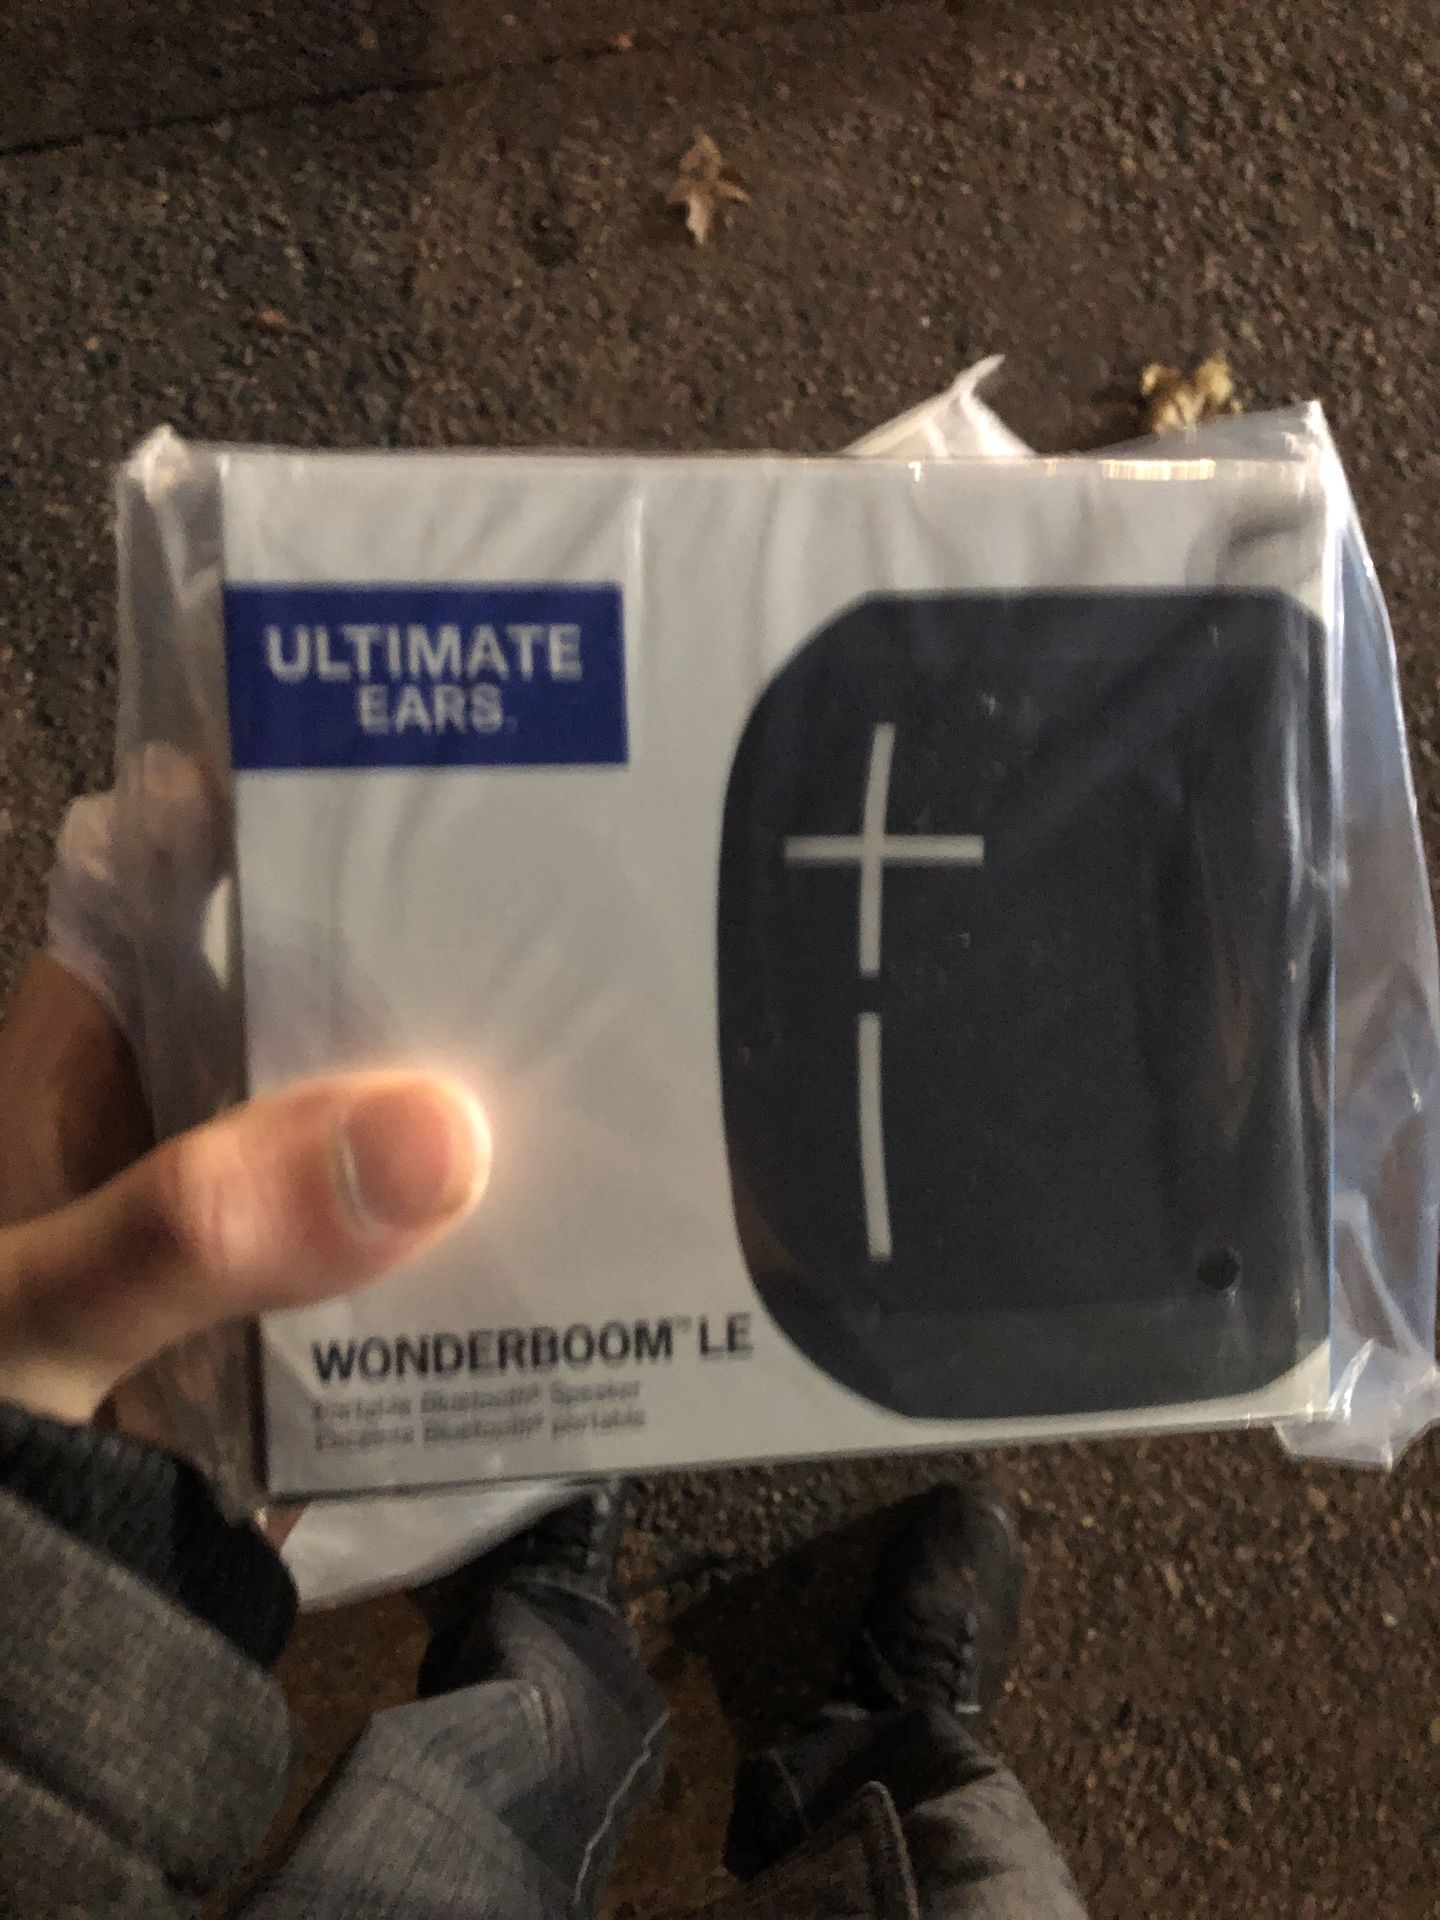 UE Wonderboom Limited Edition